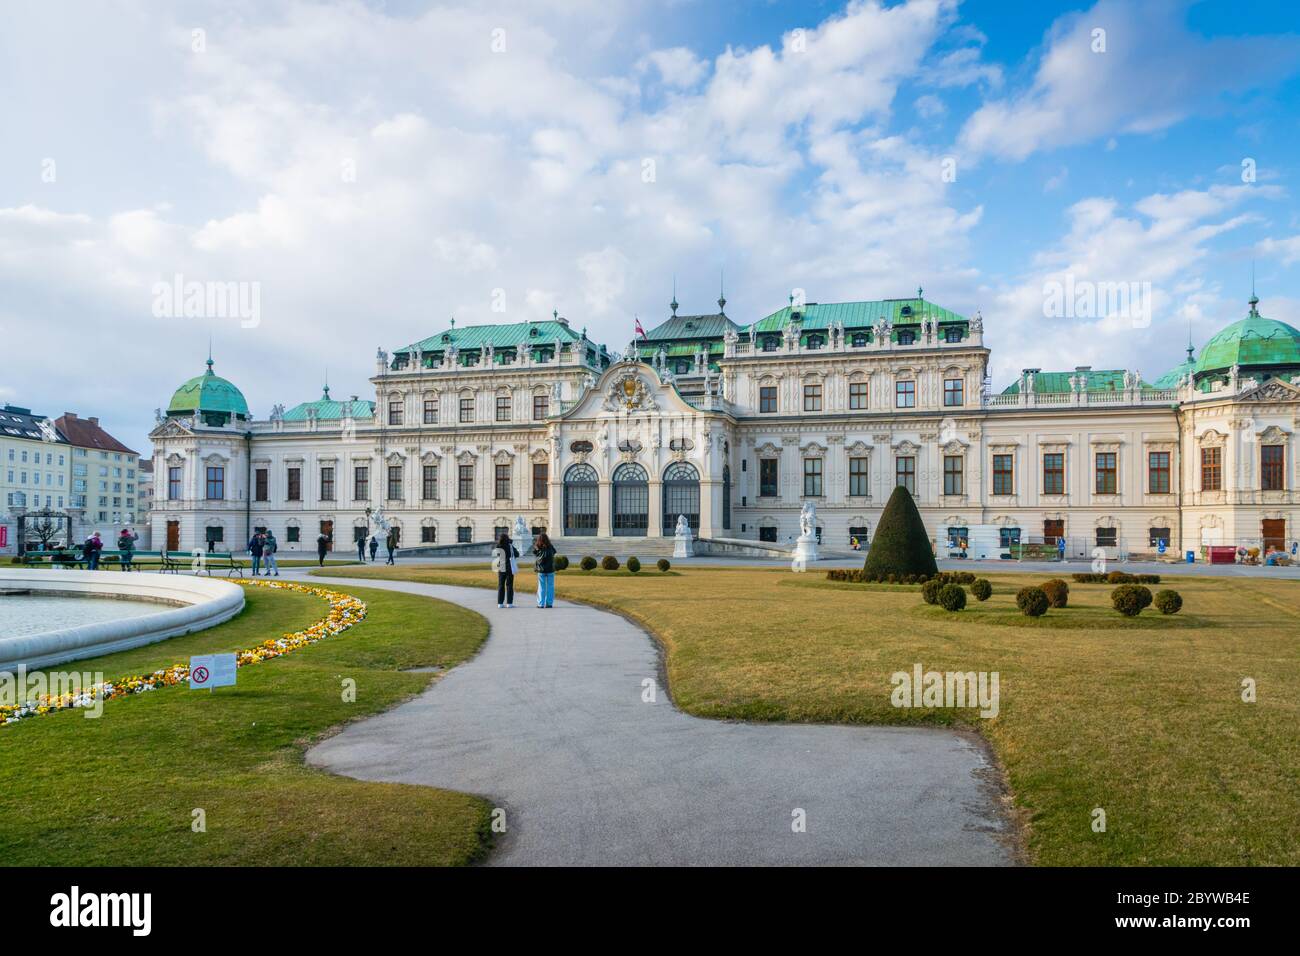 Vienne, Autriche - Mars 2020: Palais et parc du Belvédère - une architecture historique populaire pour les visiteurs et les touristes à Vienne, Autriche. Banque D'Images